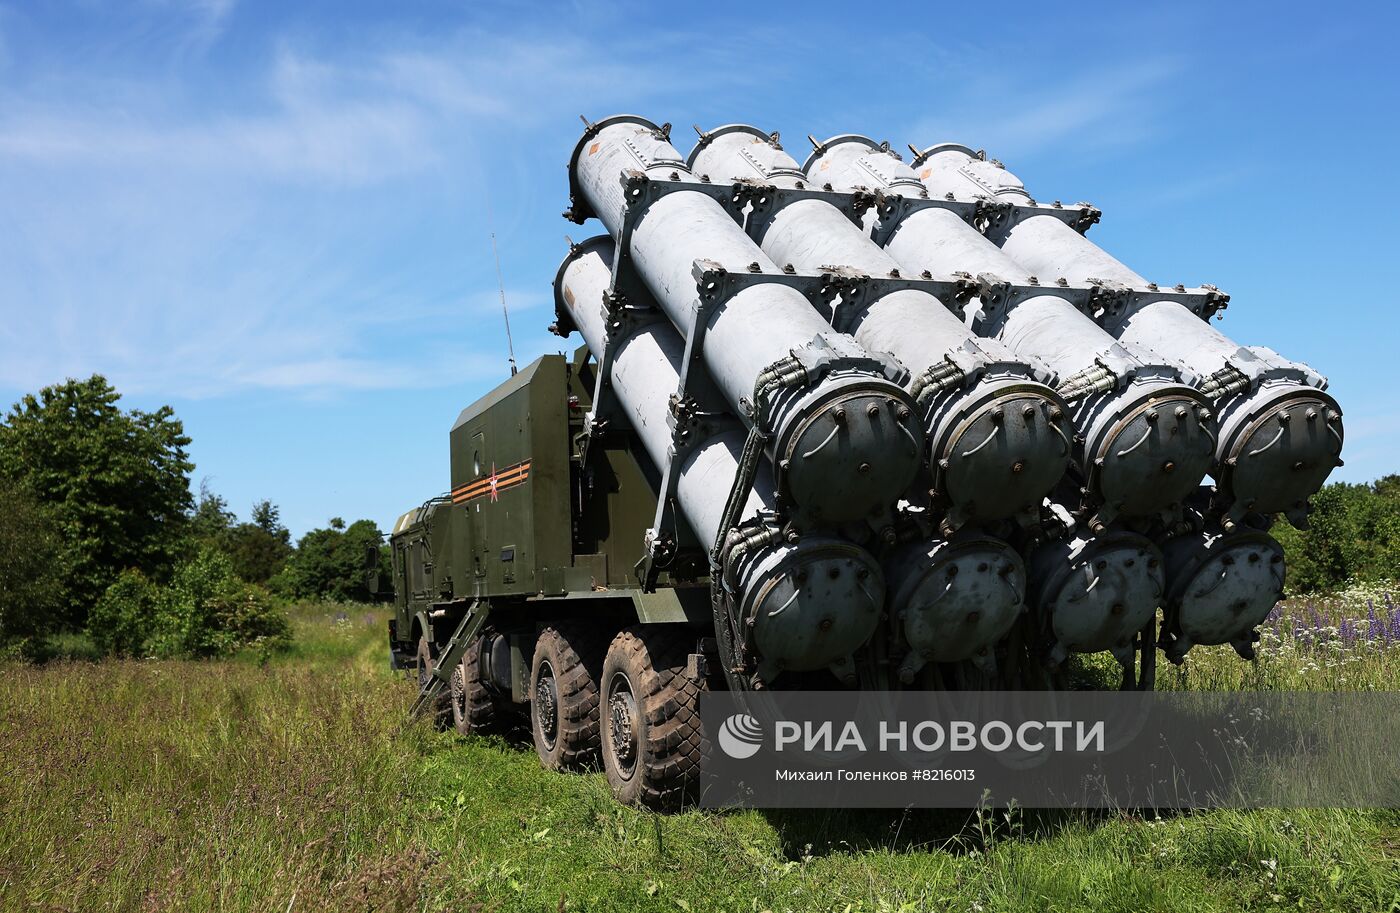 Учение ракетных войск с применением БРК "Бал" в Калининградской области